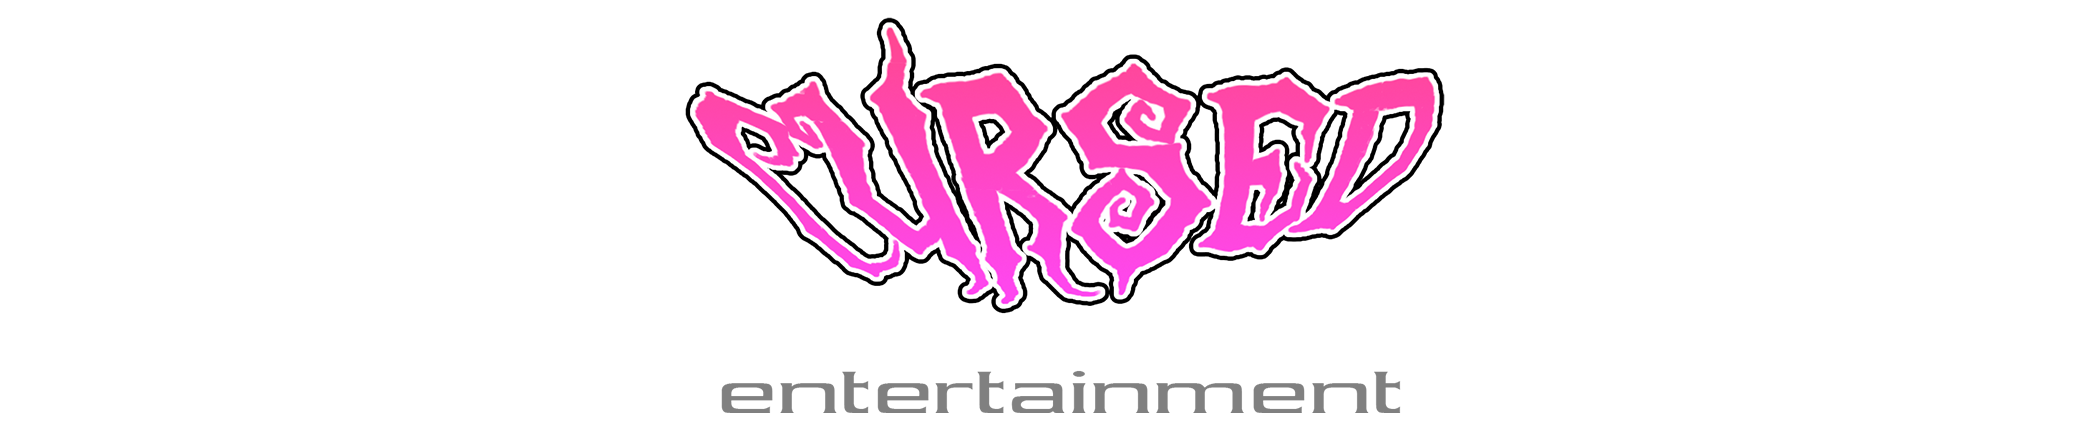 CursedEntertainment Logo